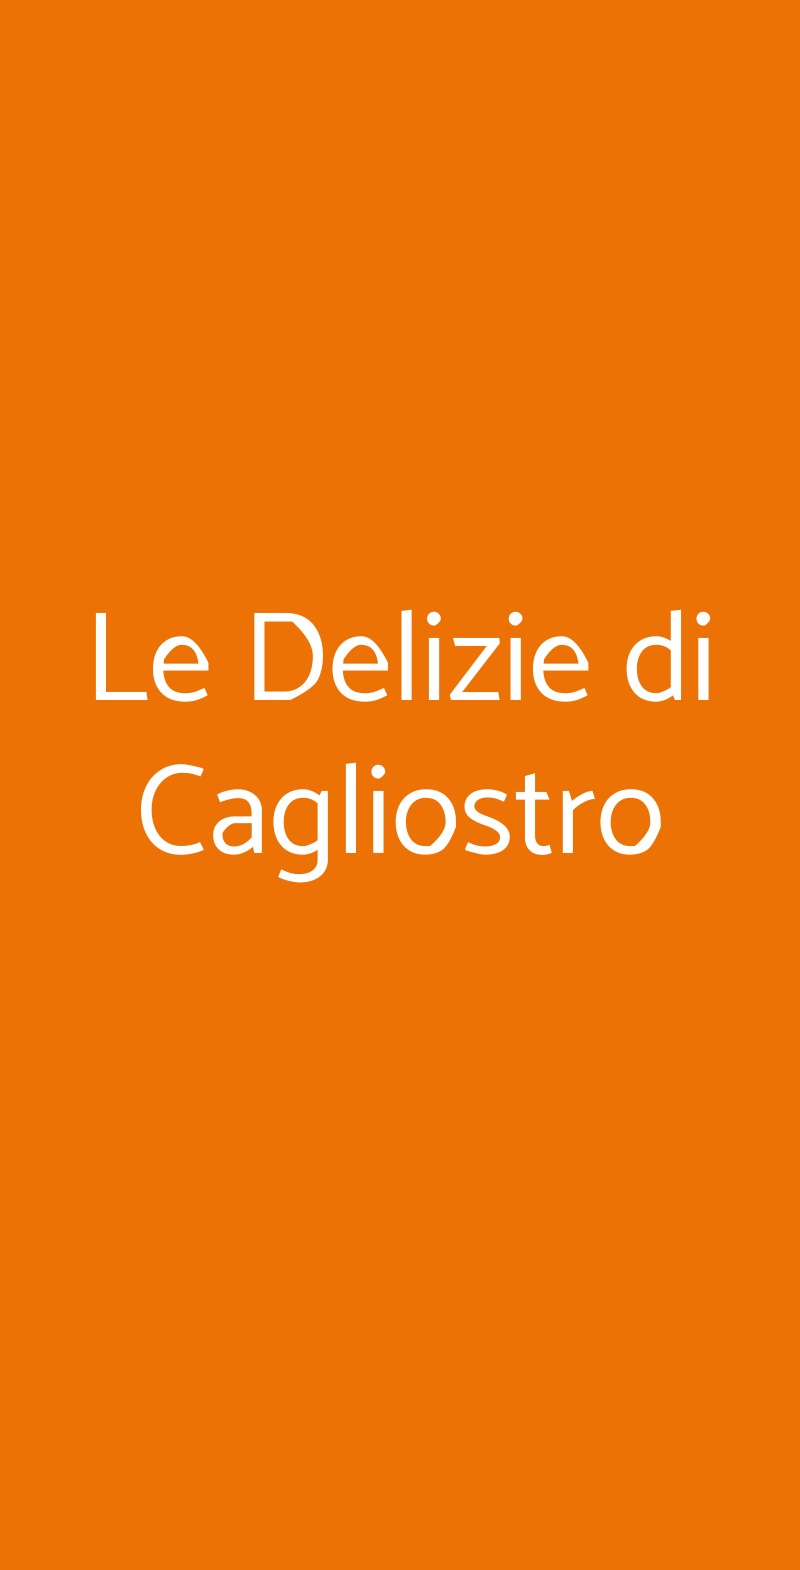 Le Delizie di Cagliostro Palermo menù 1 pagina